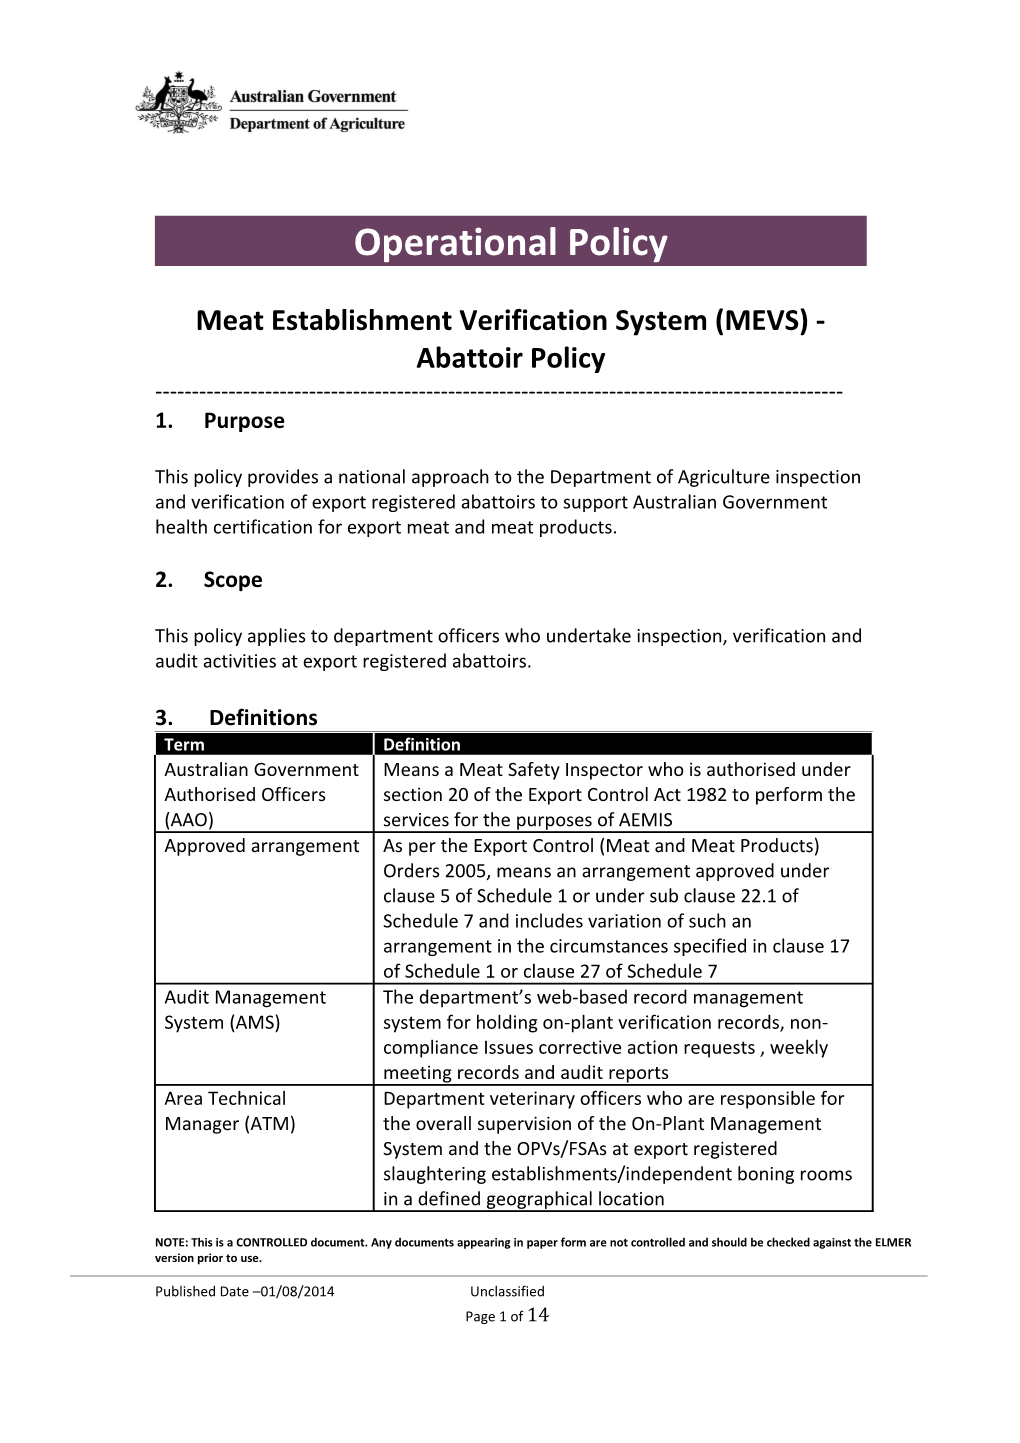 Meat Establishment Verification System (MEVS) - Abattoir Policy